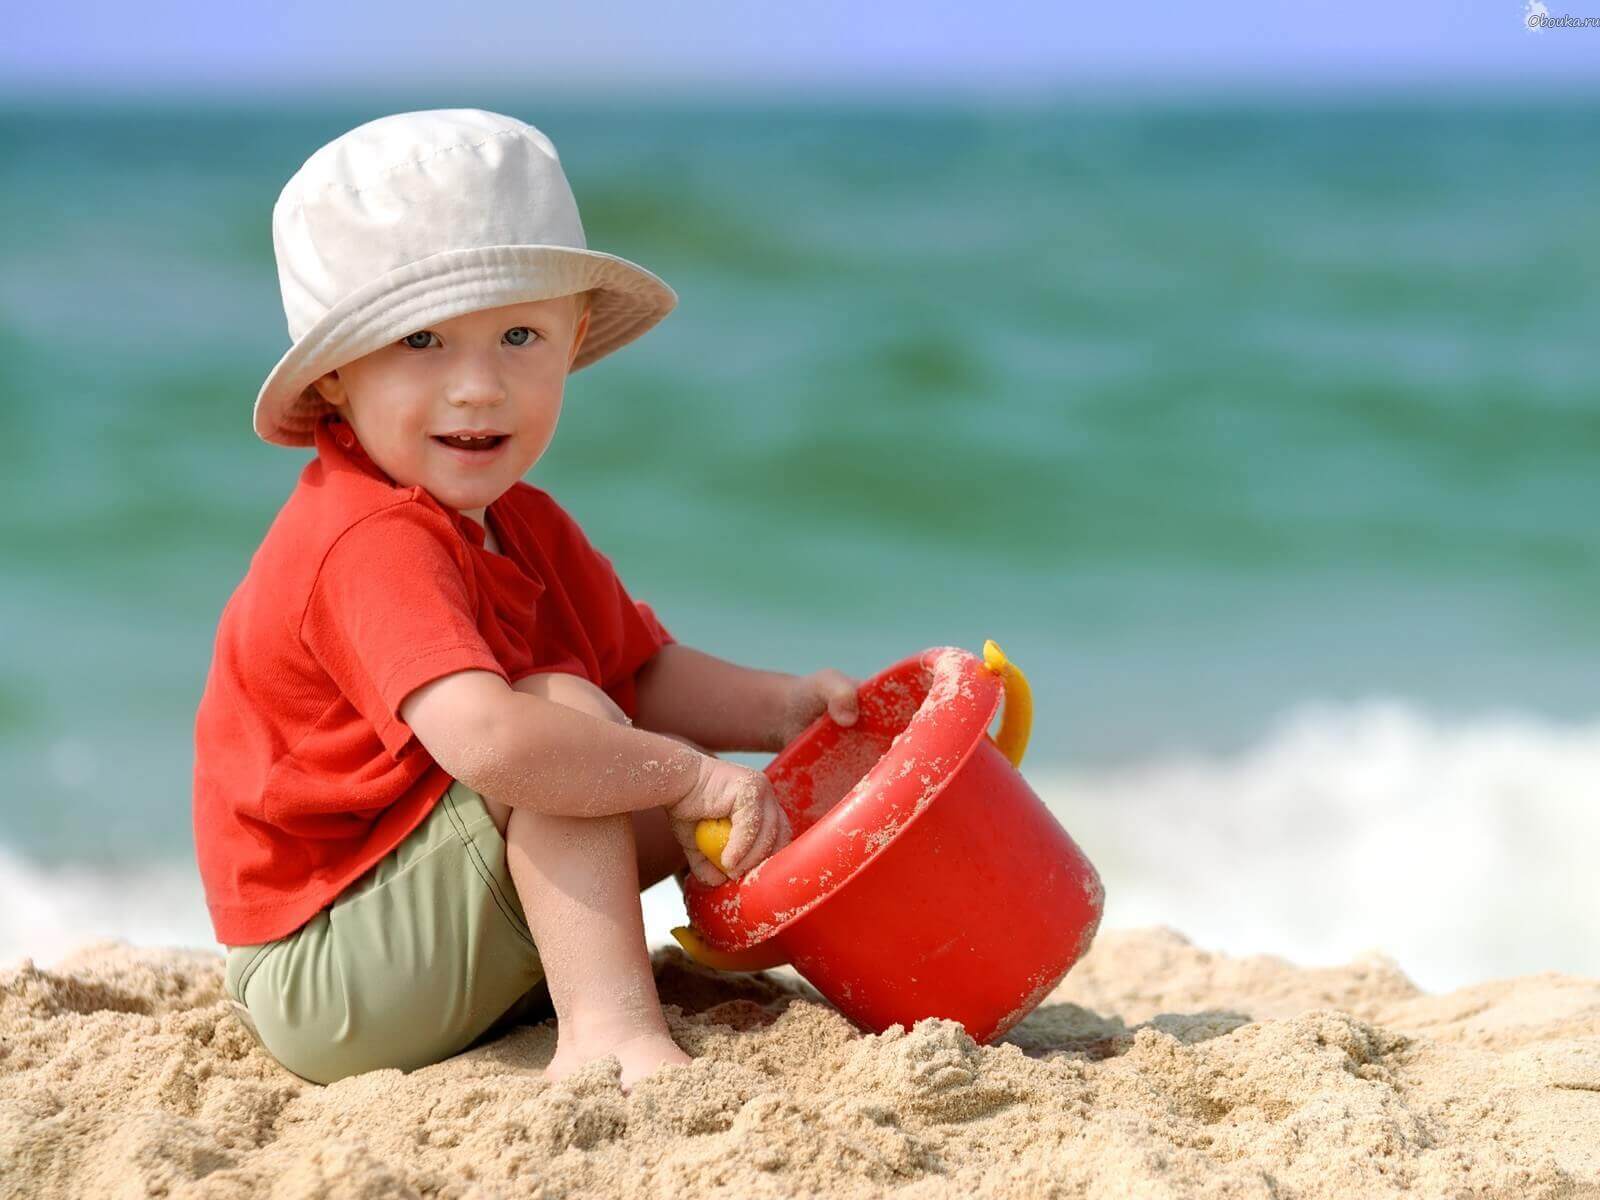 Enfant à la plage dans le sable, en plein jeu créatif avec un seau